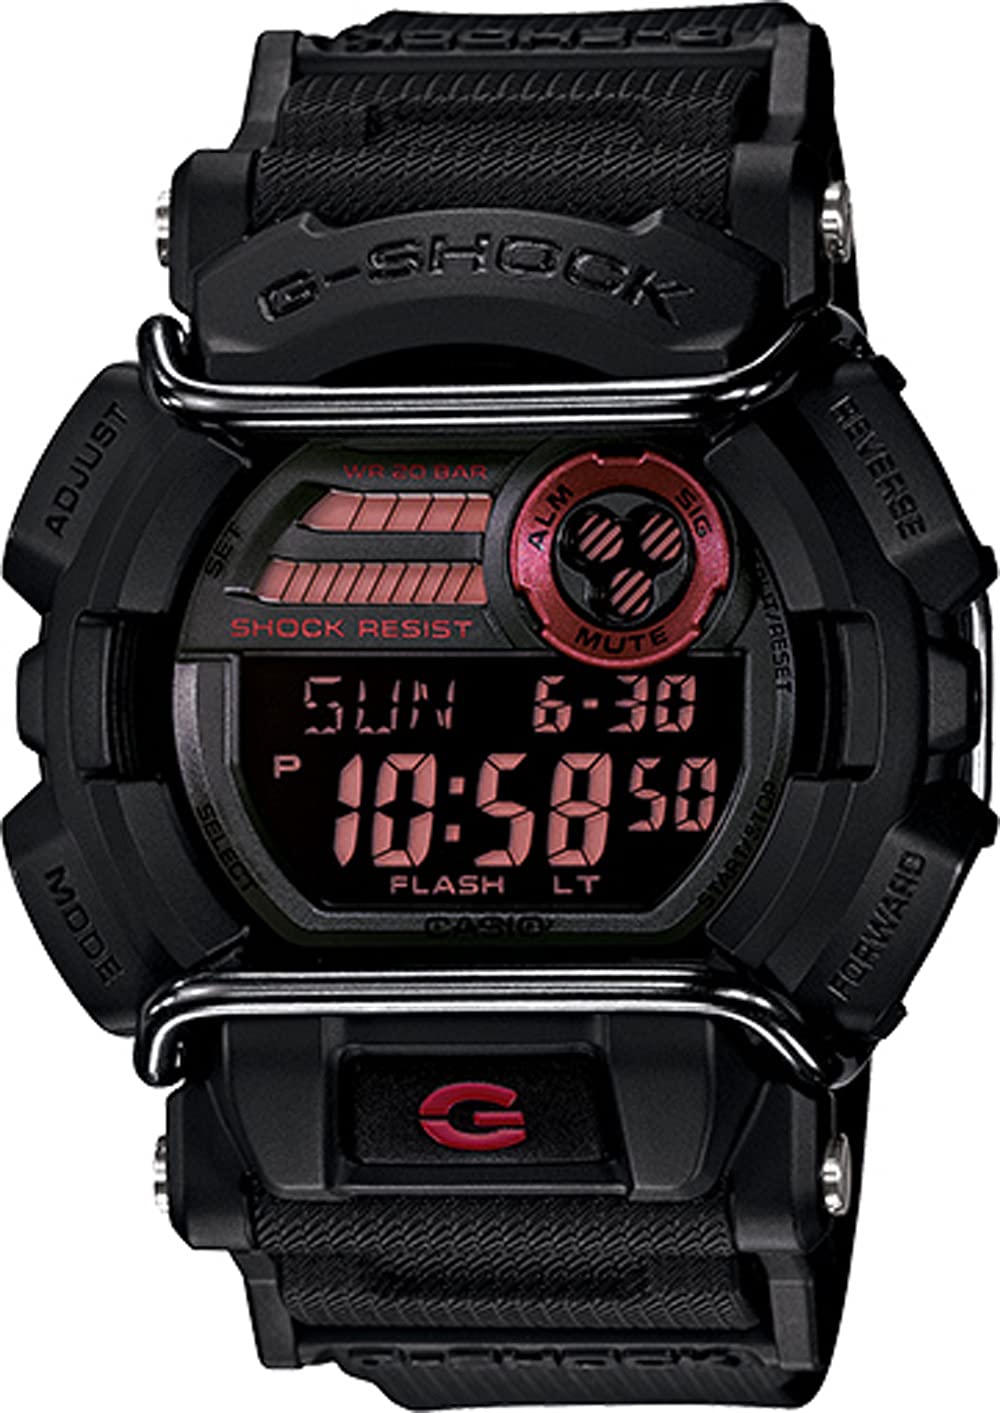 G-Shock Men's Grey Sport Watch